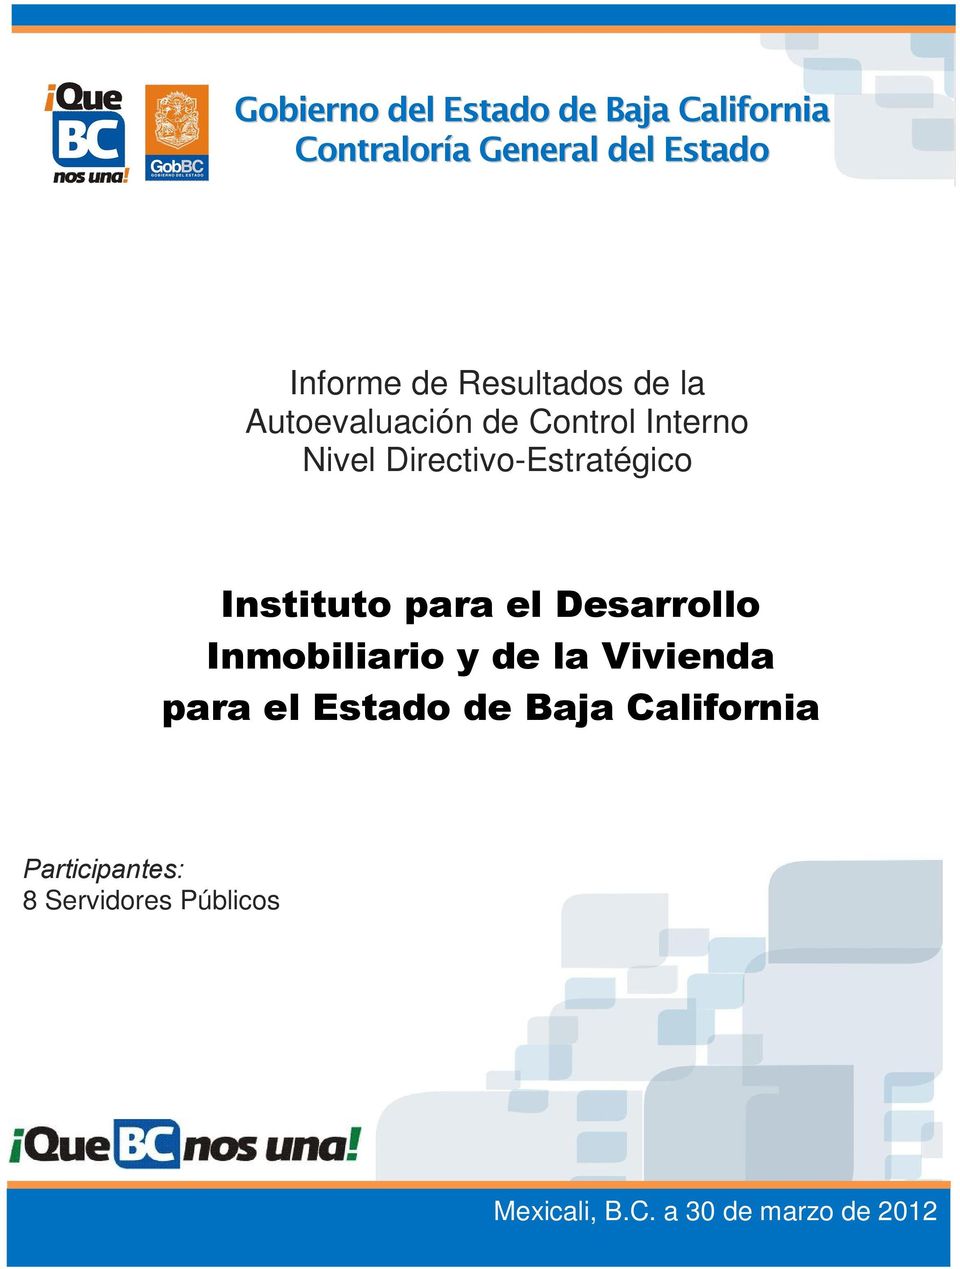 Instituto para el Desarrollo Inmobiliario y de la Vivienda para el Estado de Baja